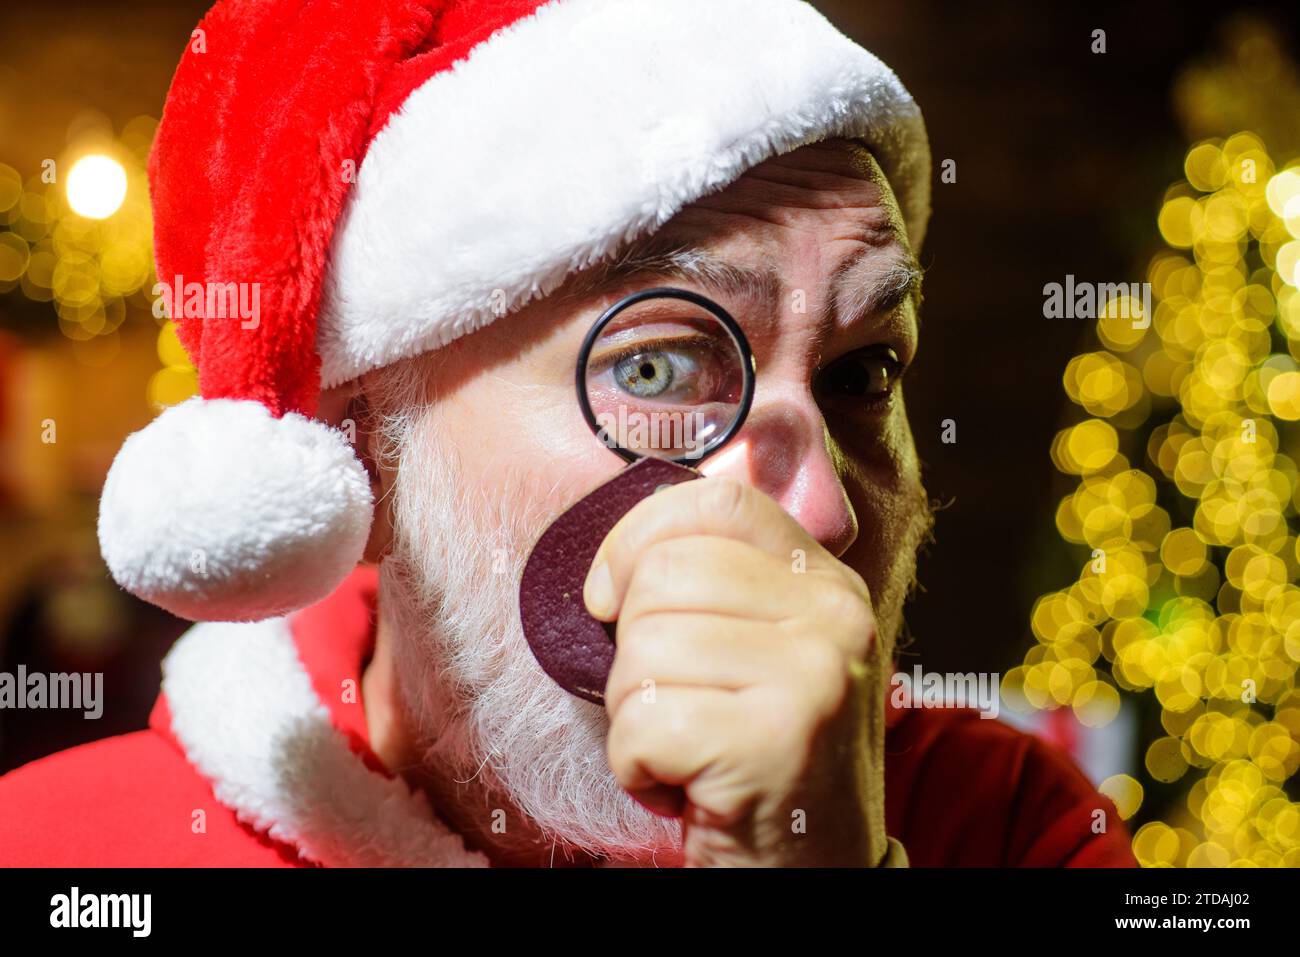 Christmastime. Père Noël regardant à travers la loupe. Gros plan portrait homme barbu dans les vêtements du Père Noël avec lentille loupe. Joyeux Noël Banque D'Images